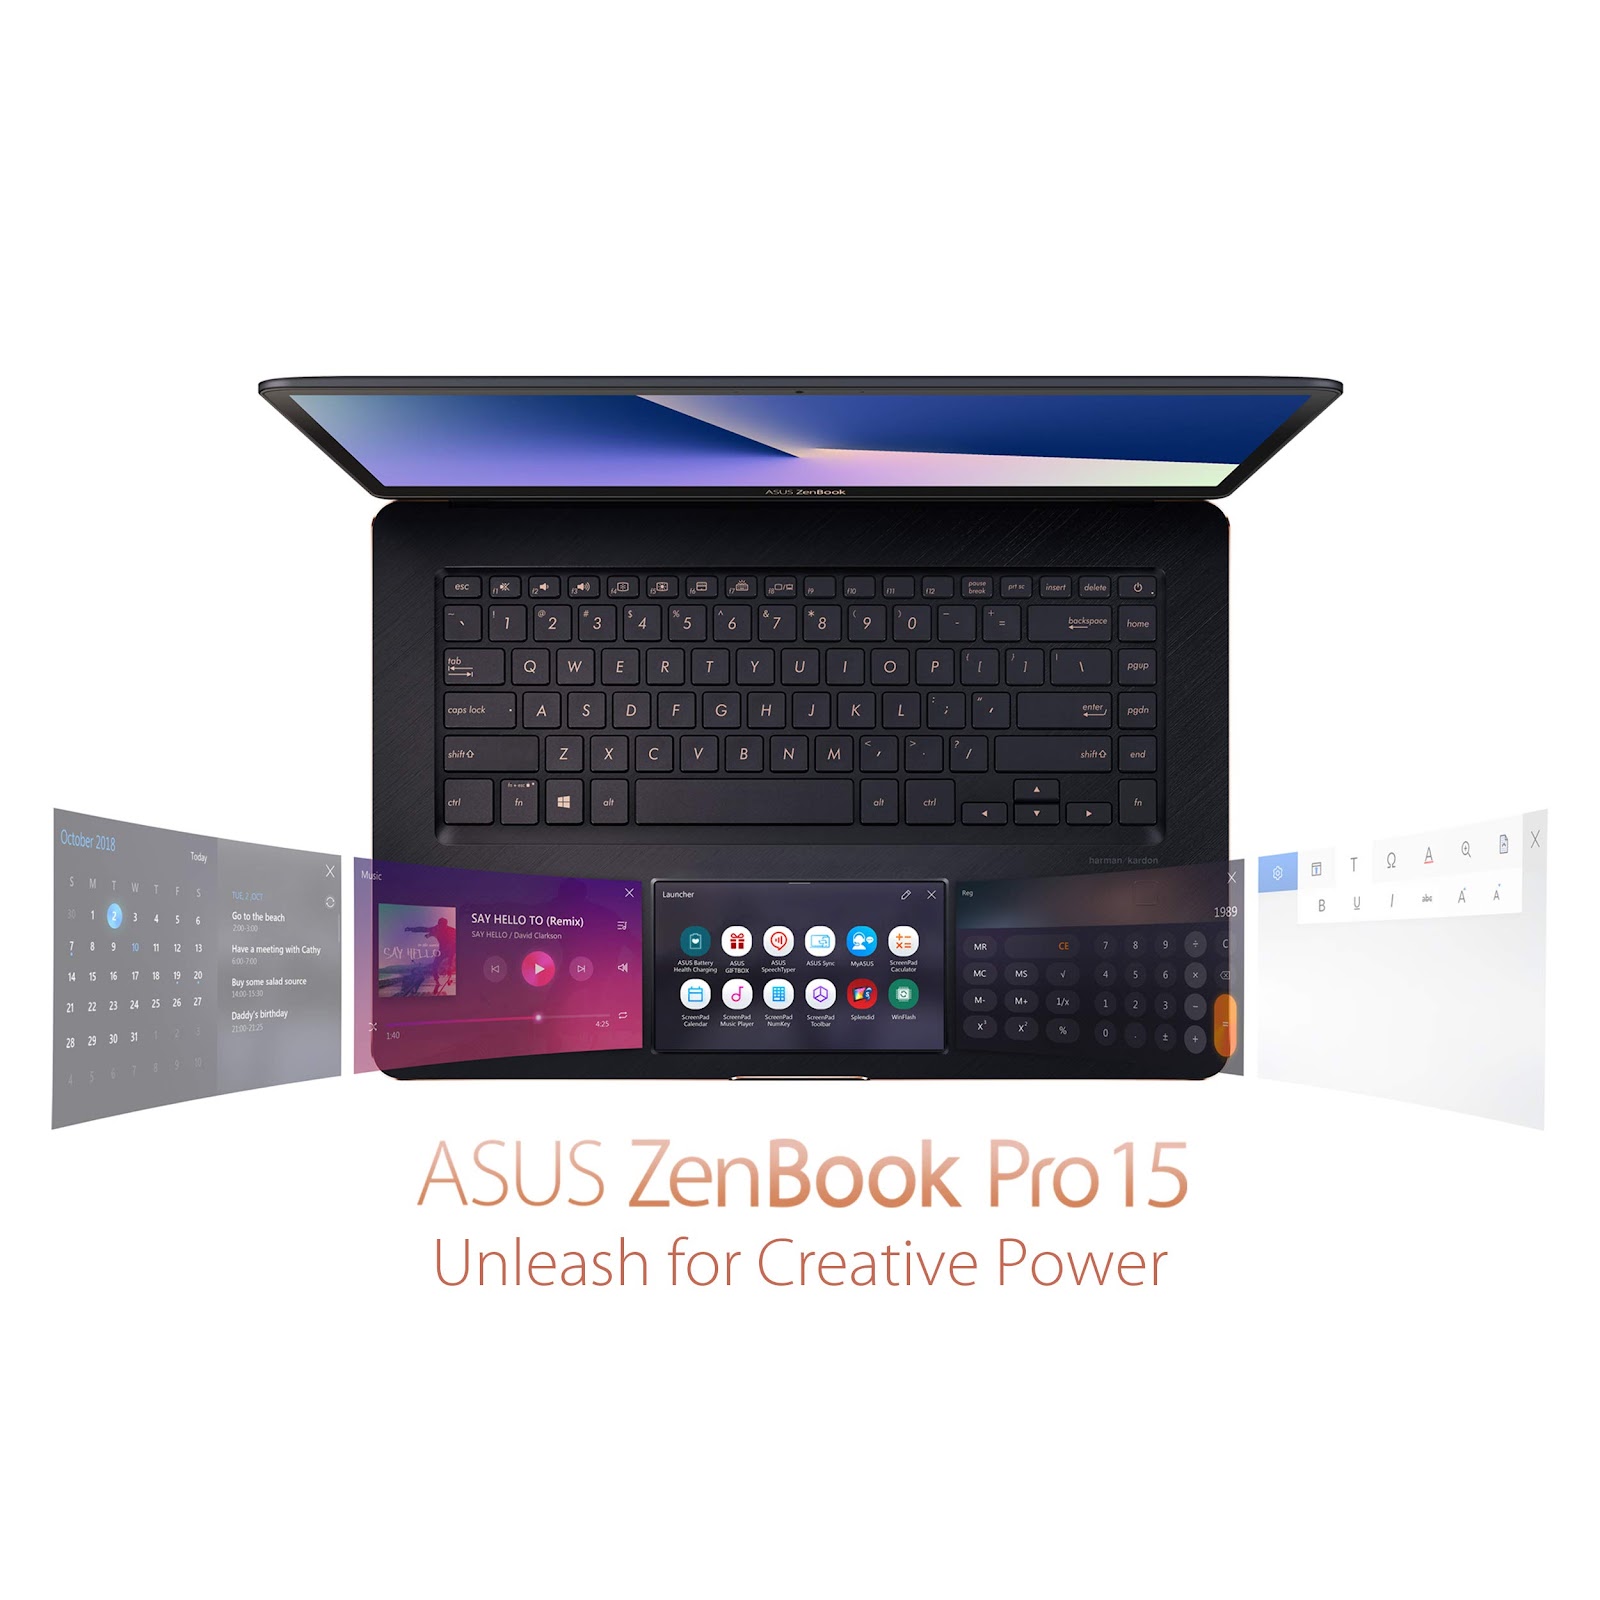 ASUS ZenBook Pro 15 i9 8950hk